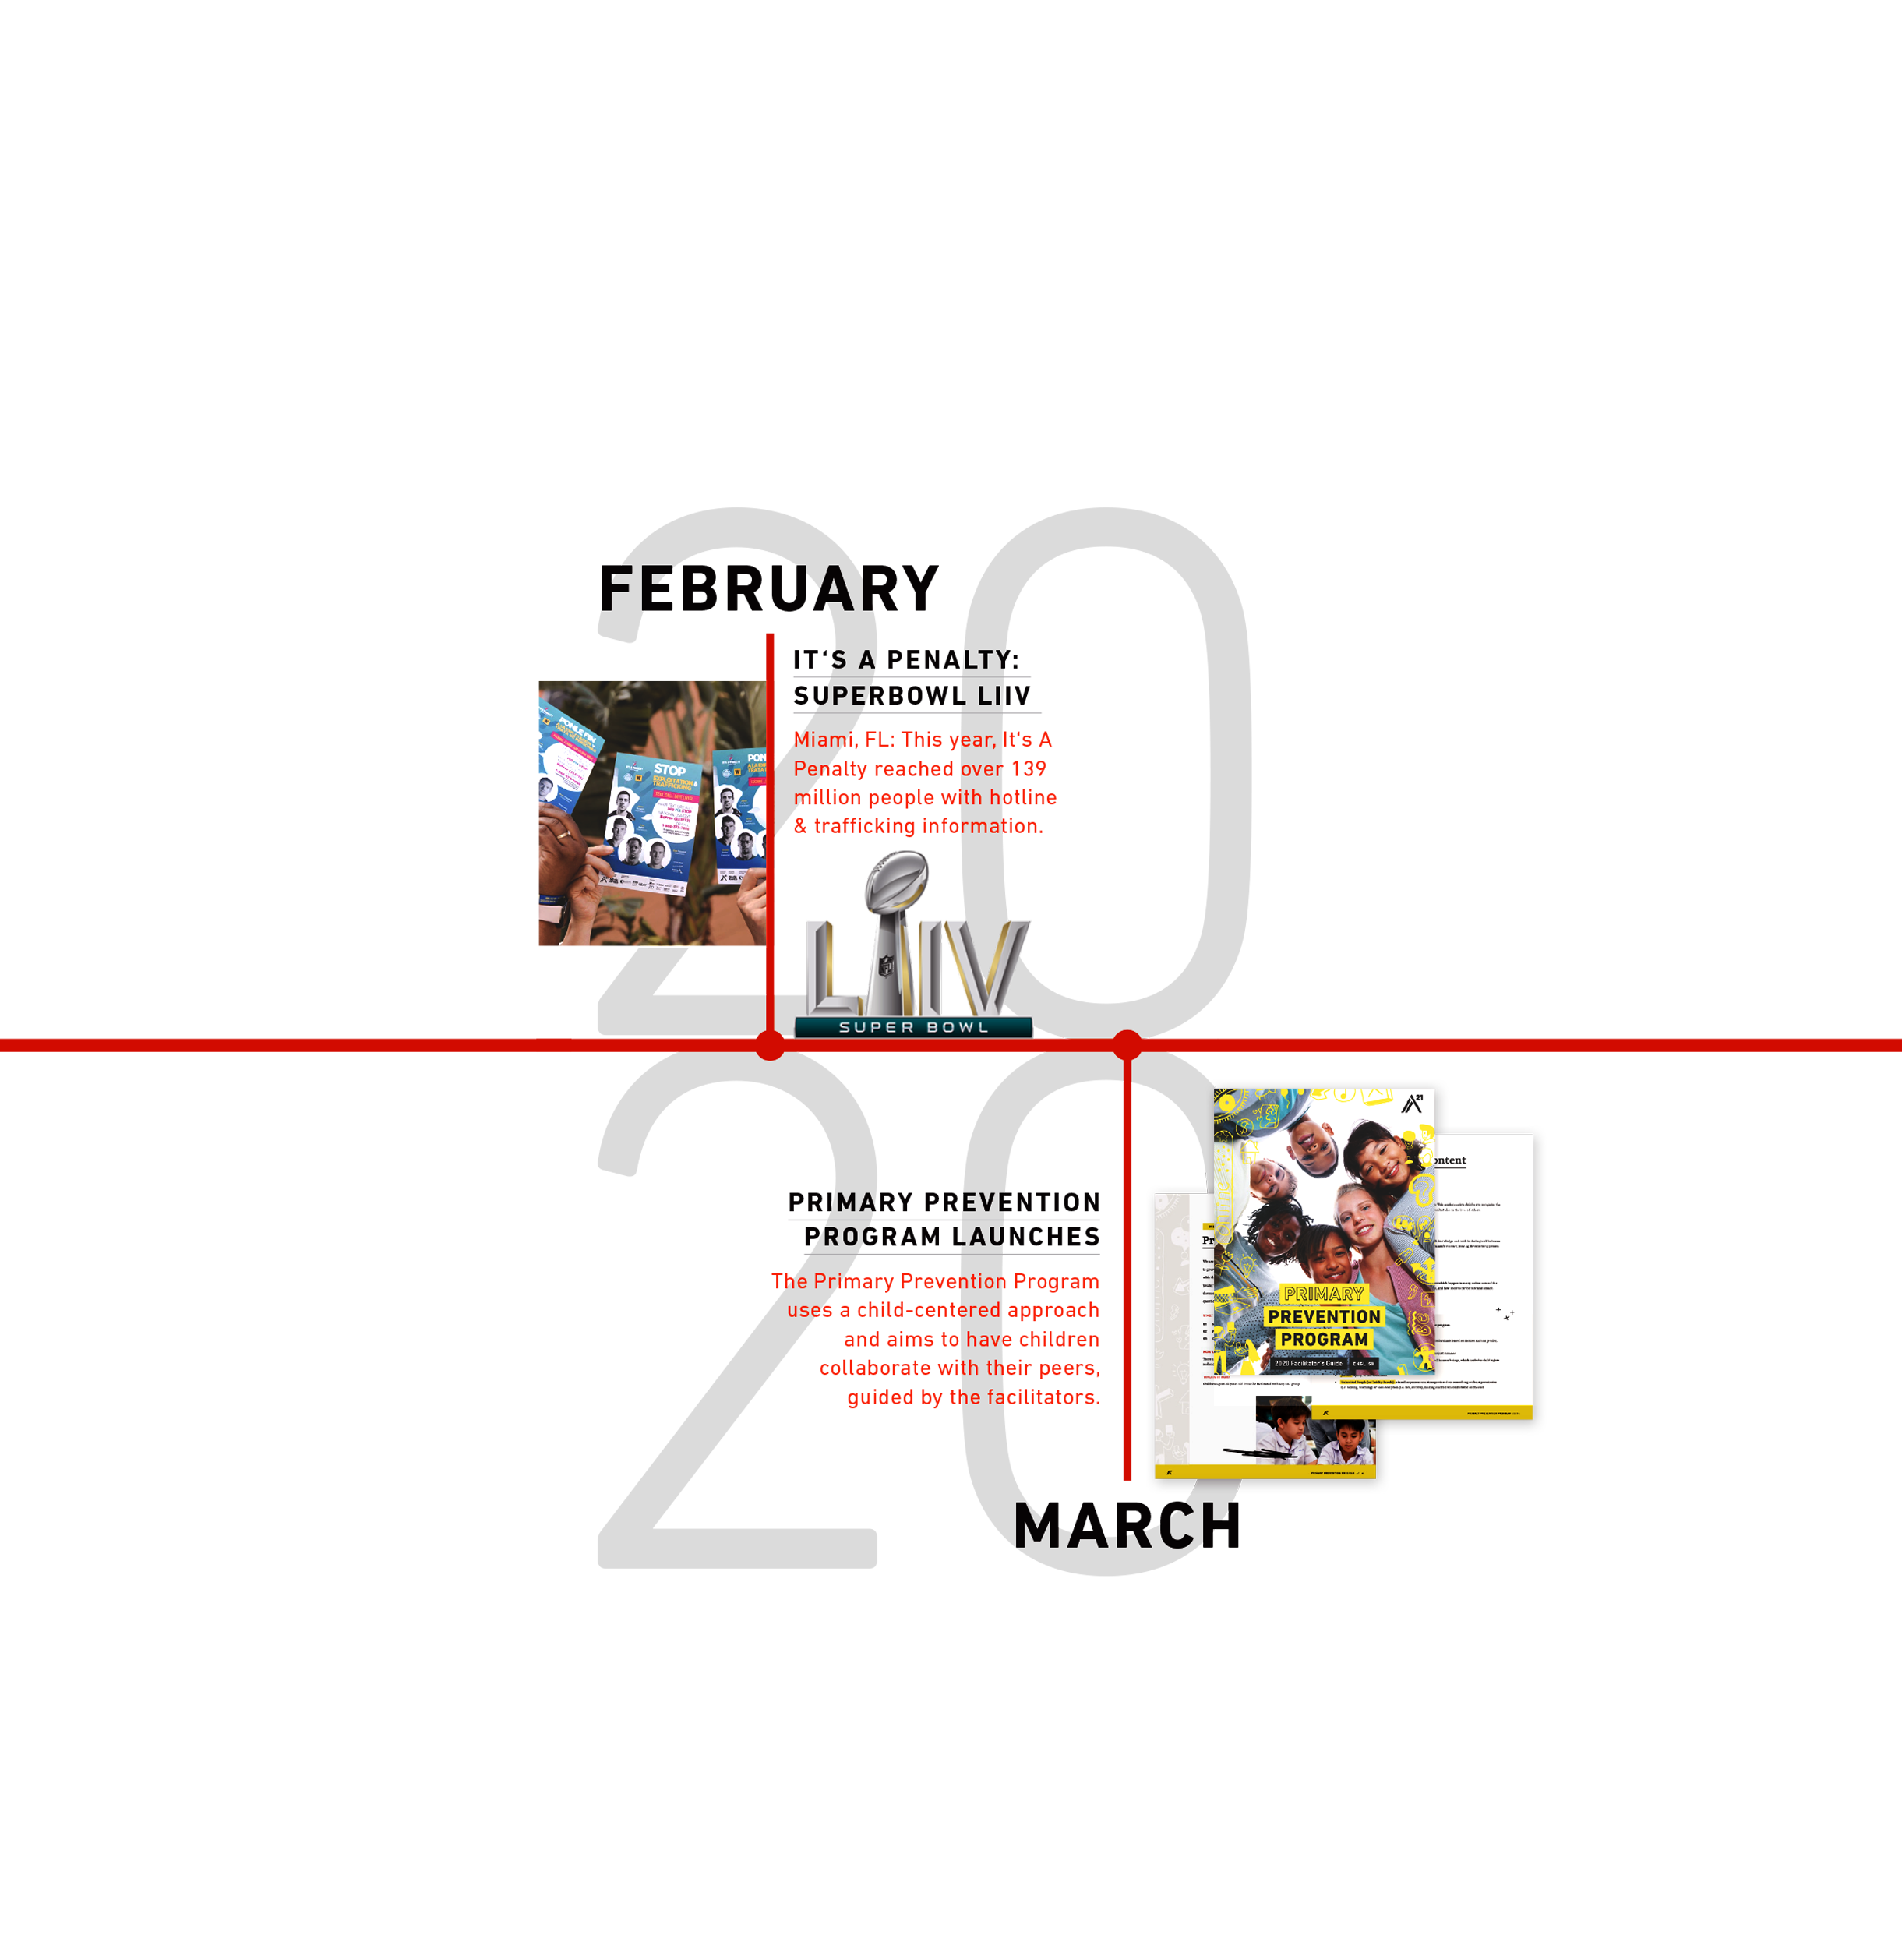 2020 A21 timeline